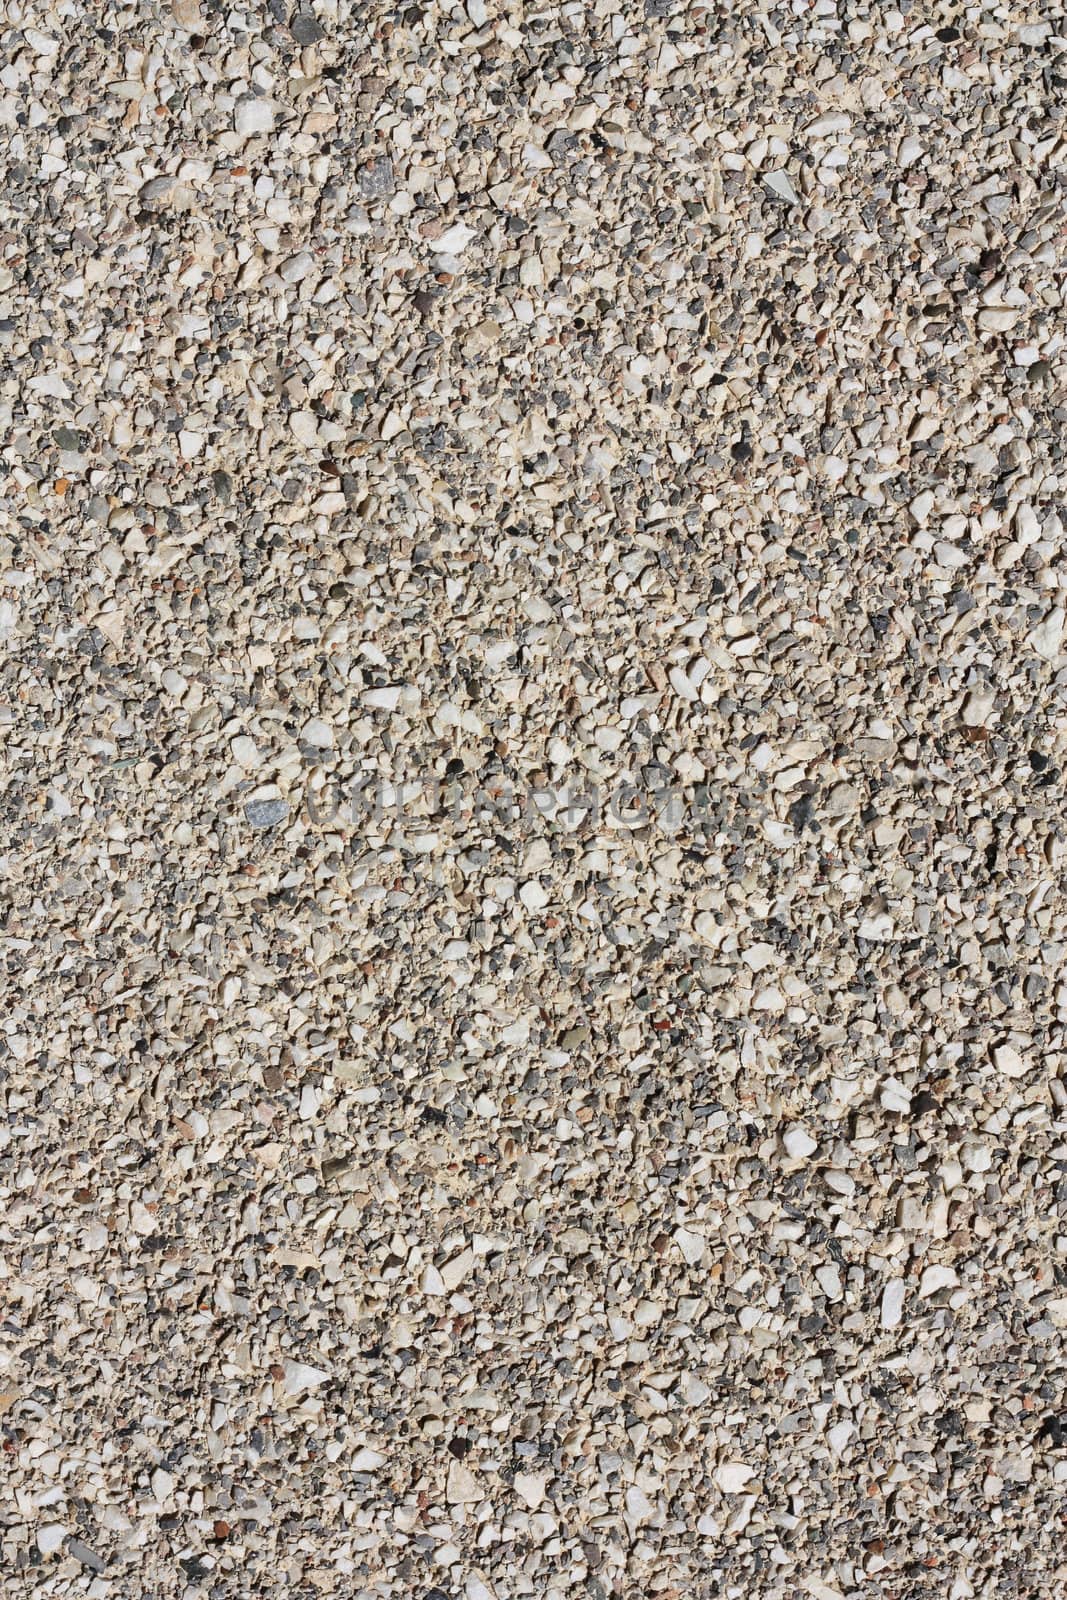 pebbles texture by schankz